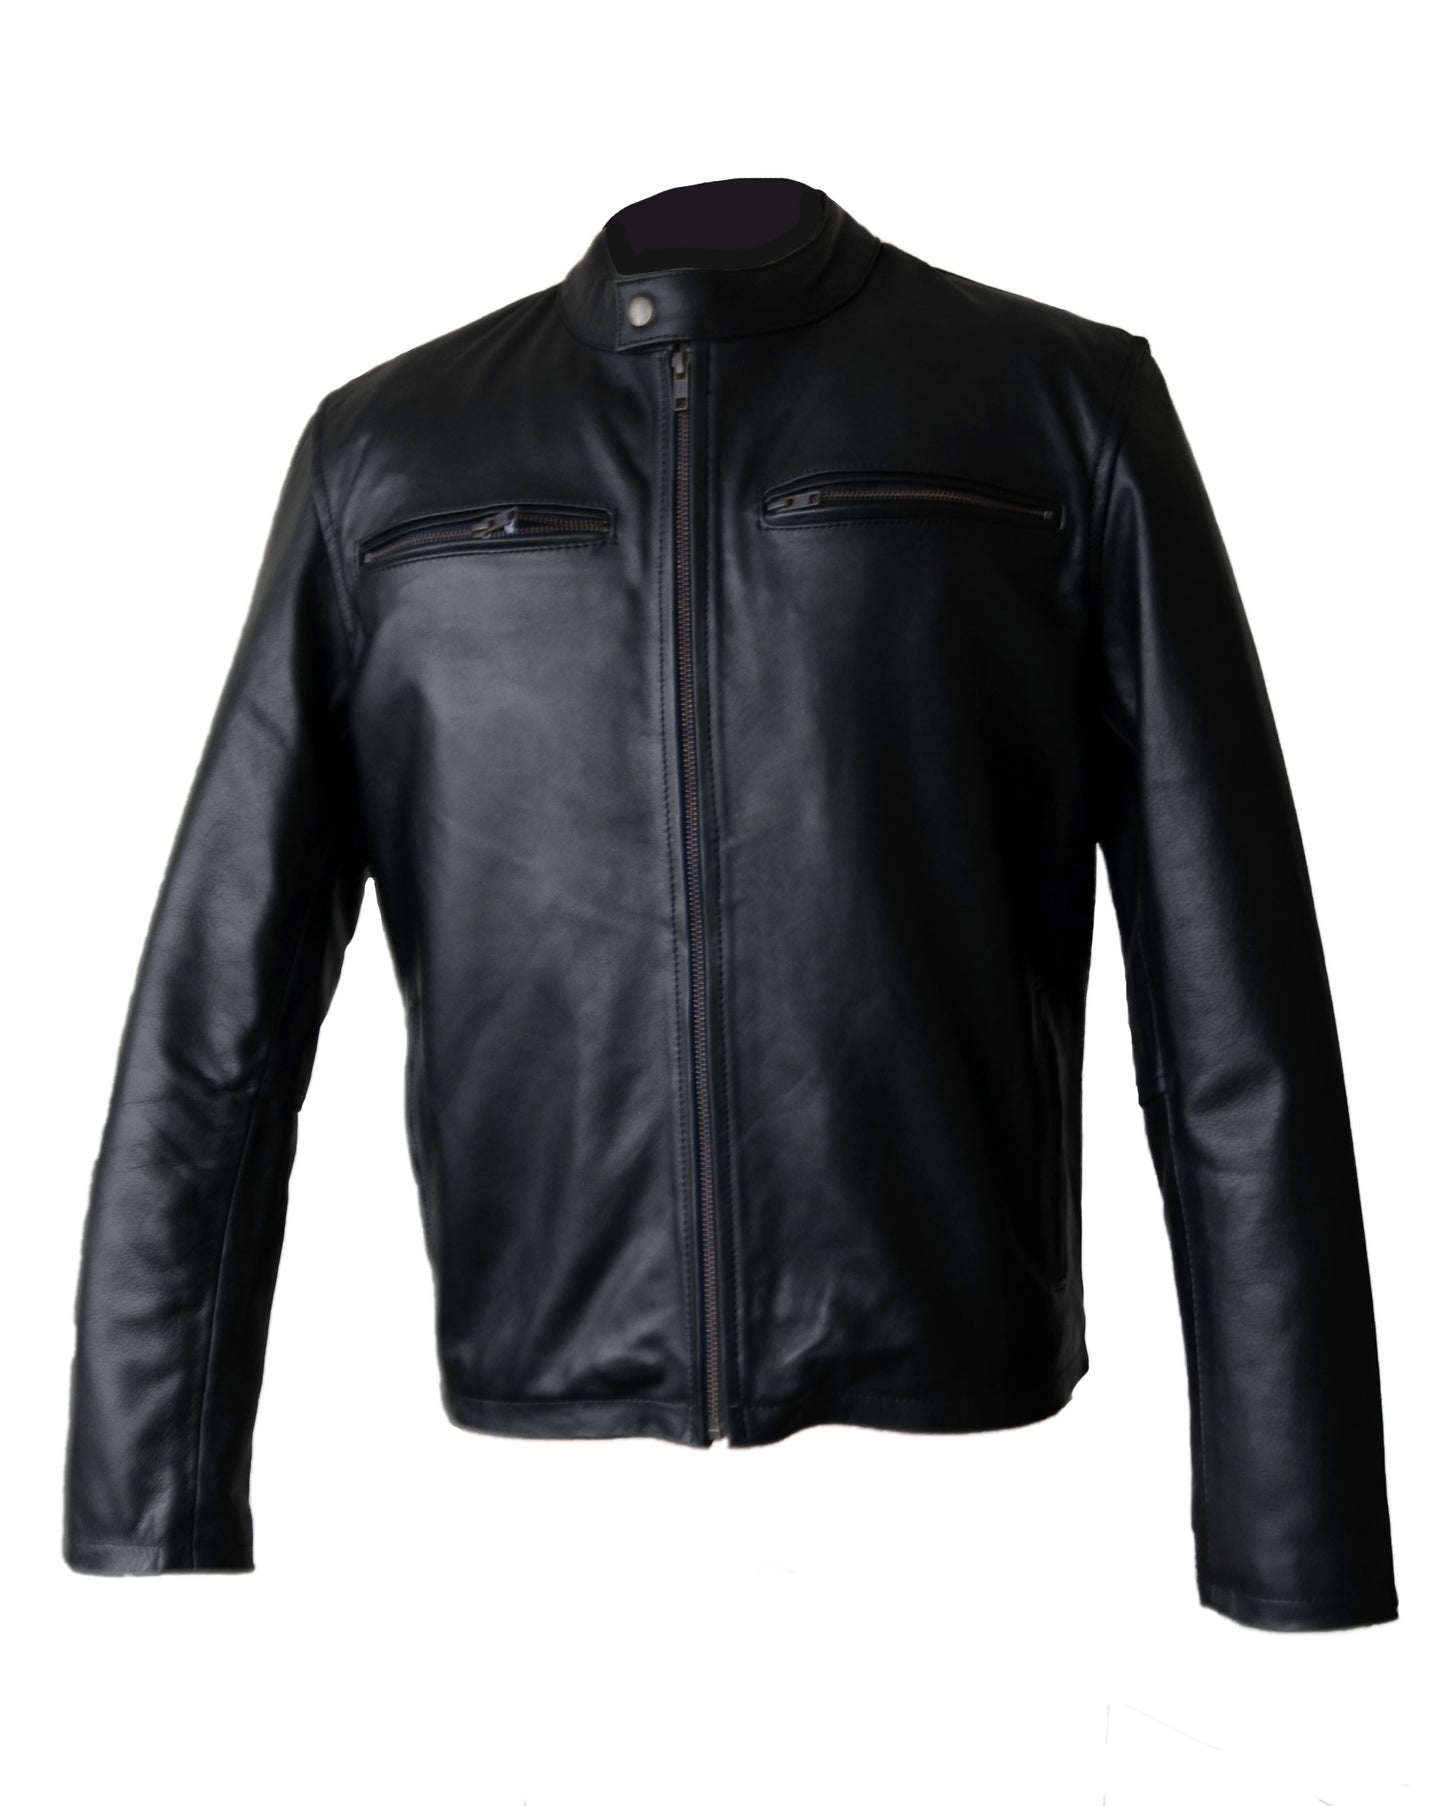 Motorcycle Fashion Leather Jacket (JLMF04)